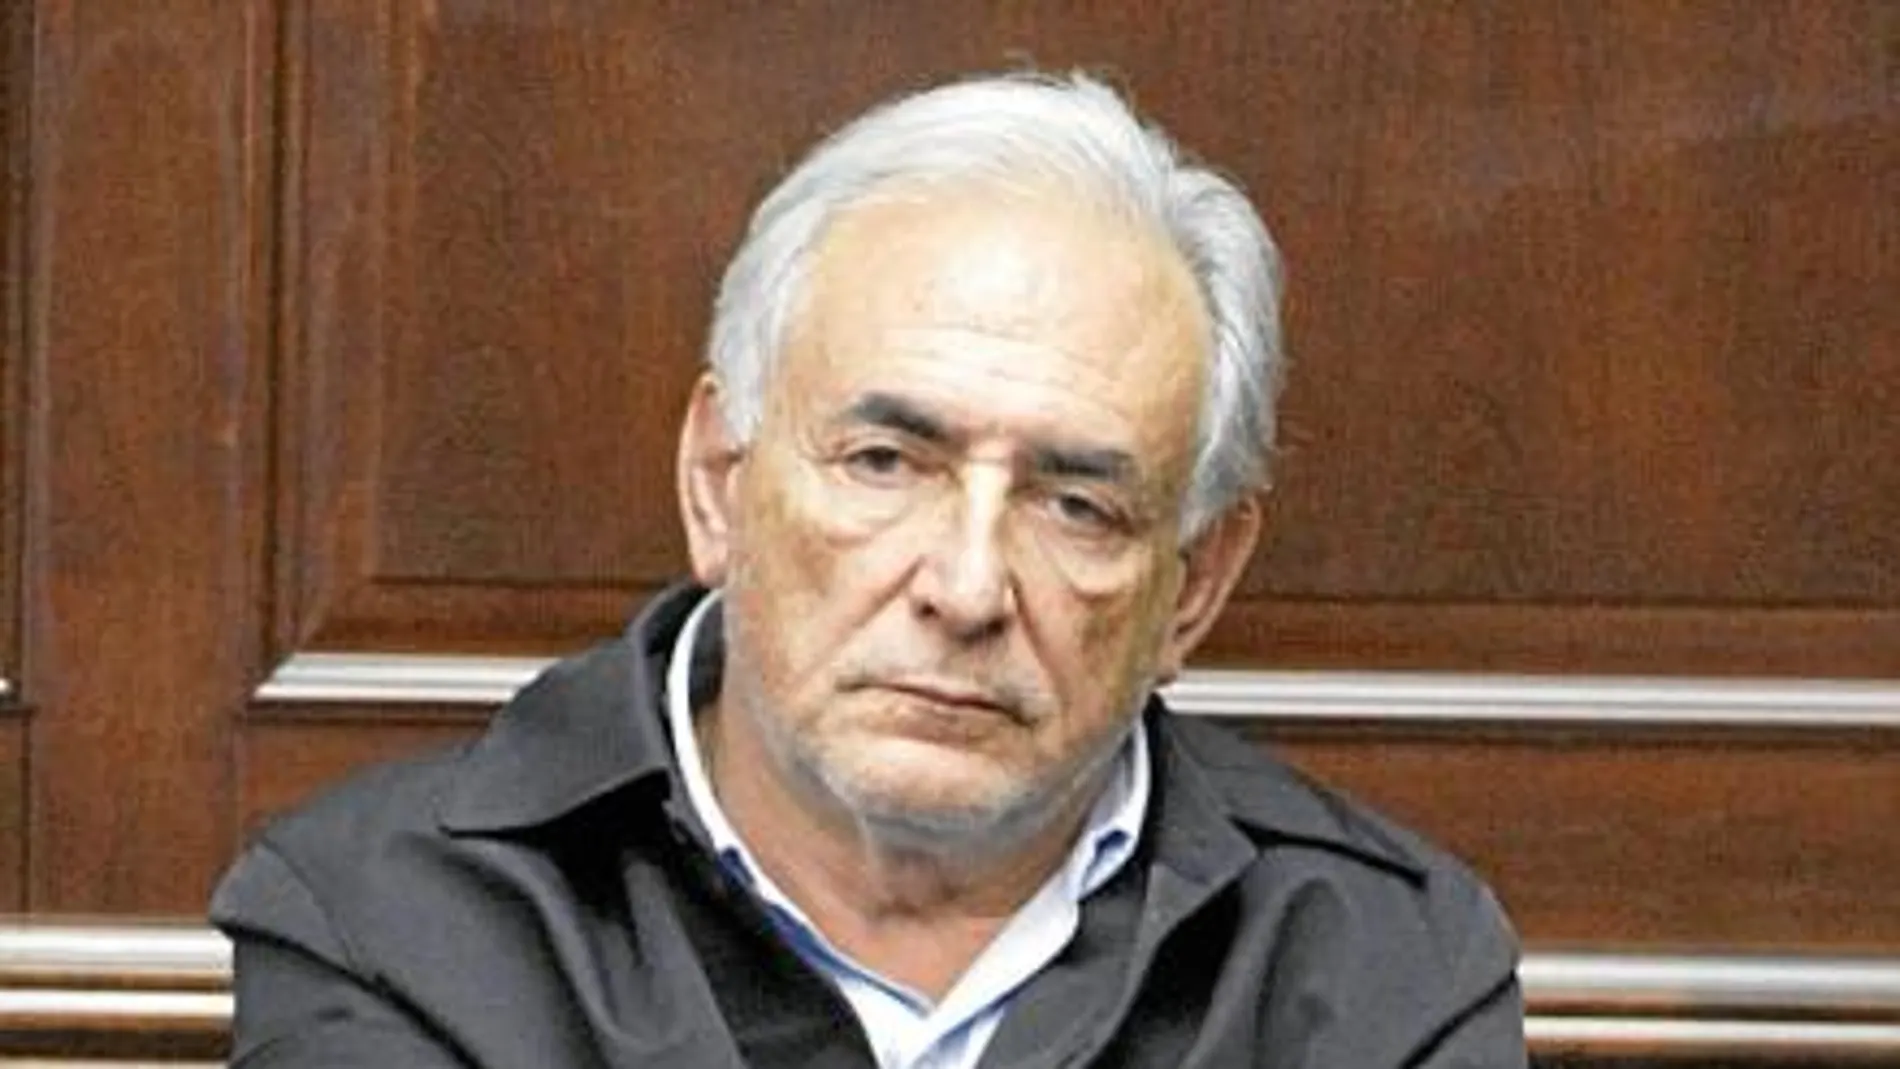 Strauss-Kahn (Ex director del FMI).El caso más llamativo. El político francés se encuentra en libertad bajo fianza tras ser acusado de agresión sexual a una camarera en el hotel Sofitel de Nueva York.